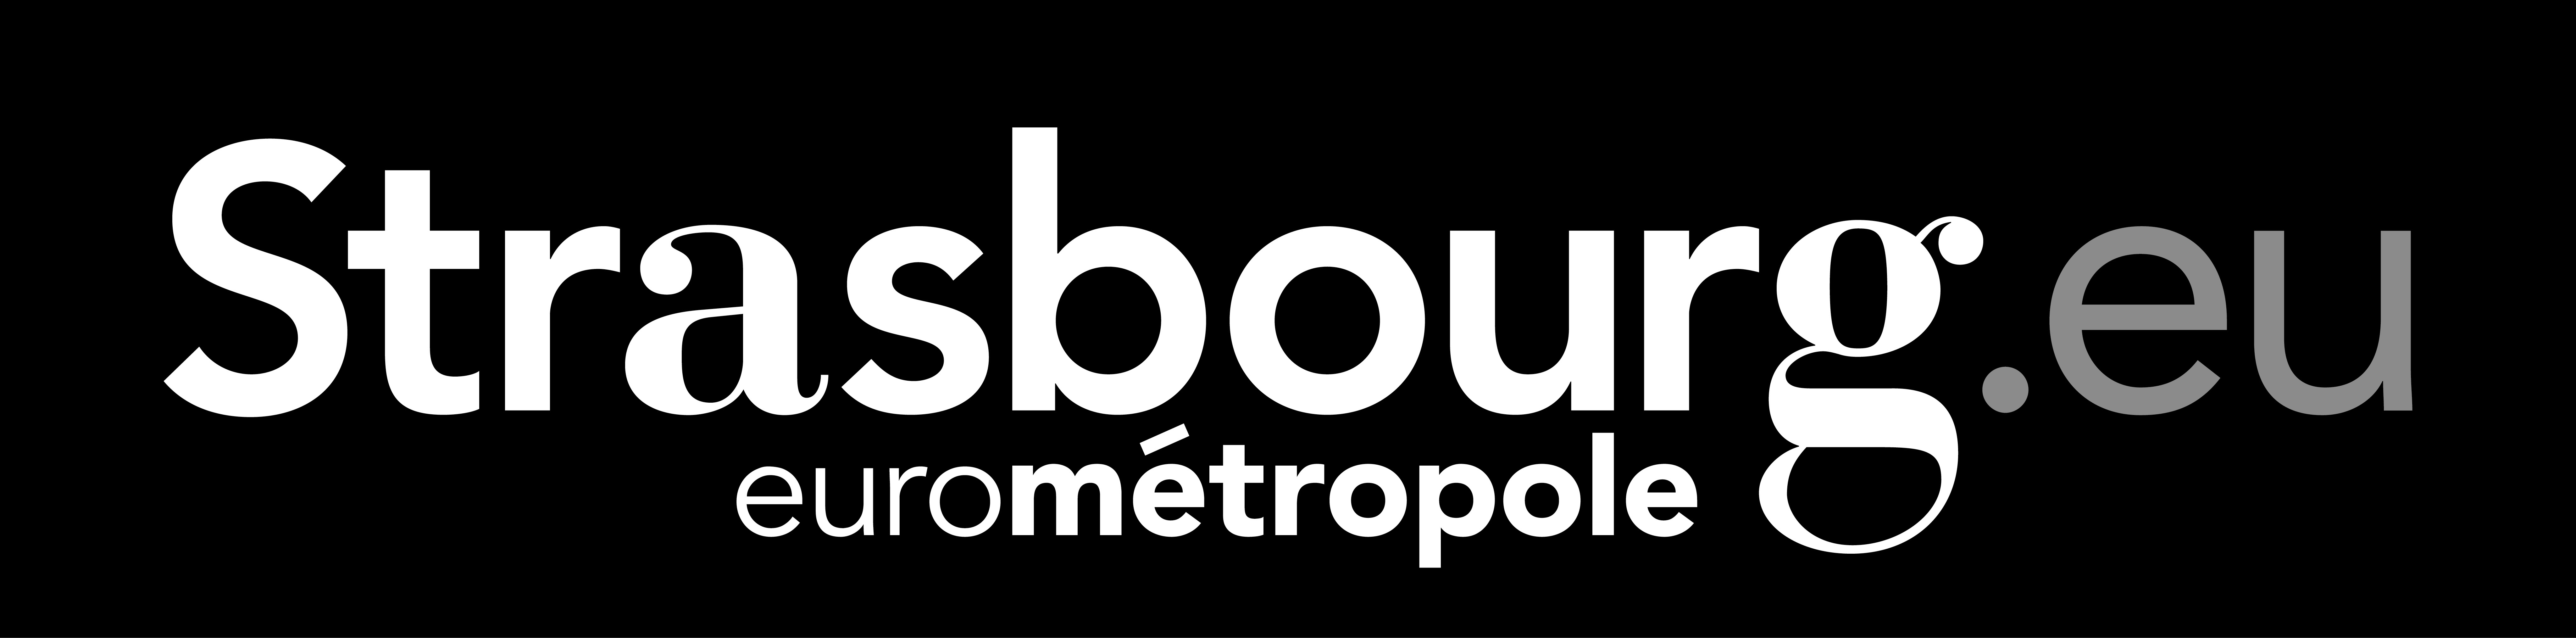 logo Strasbourg Eurométropole